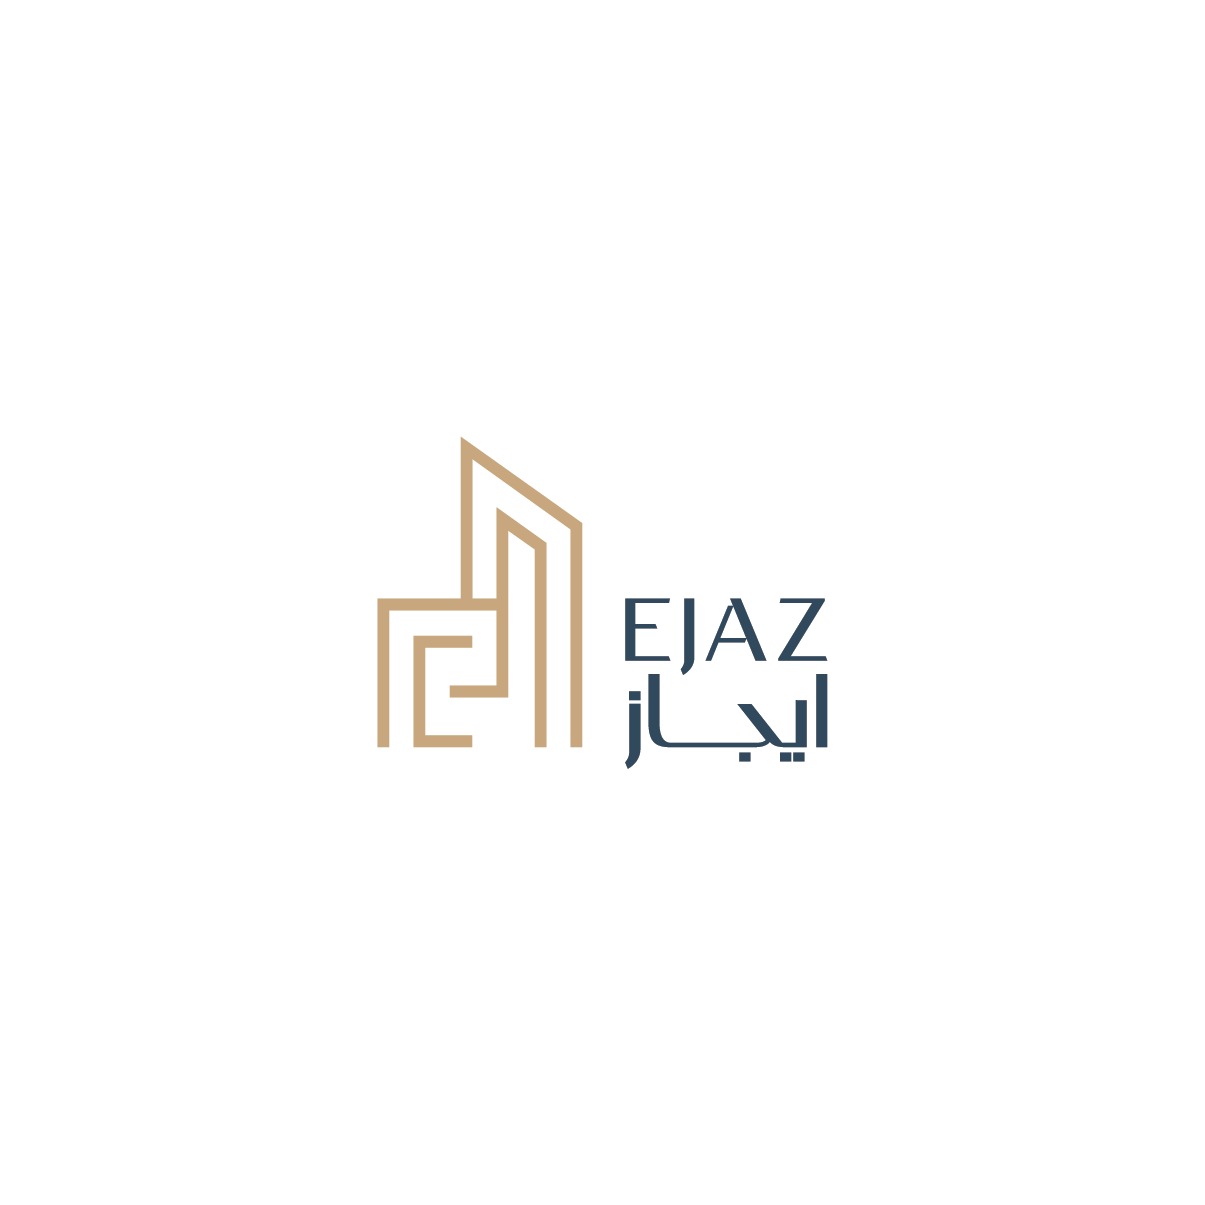 Ejaz Al Aamal Group